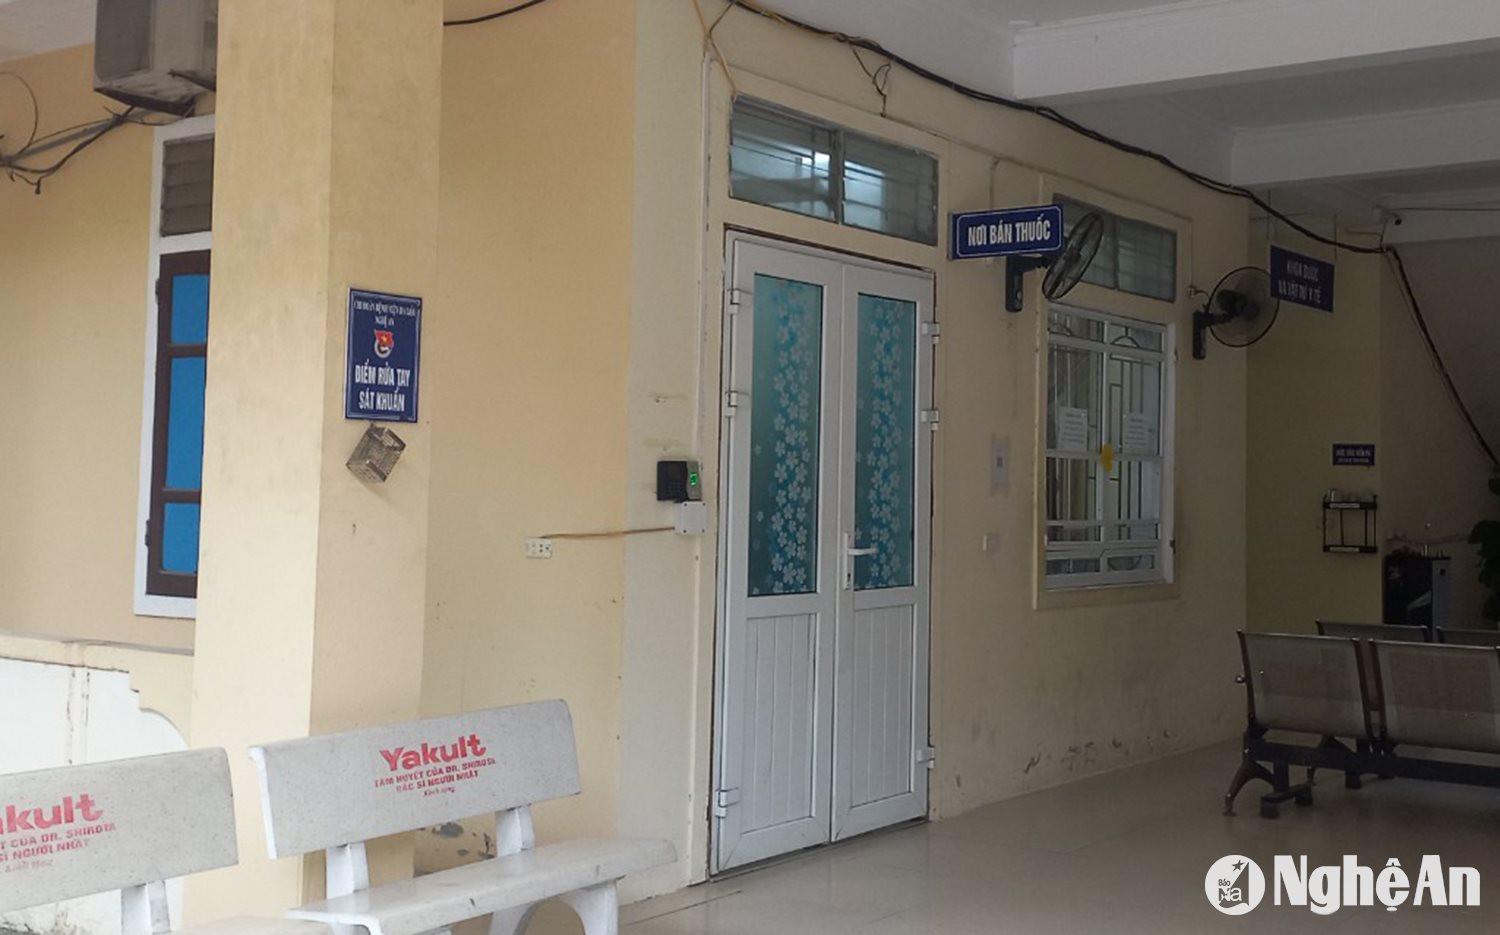 Nhà thuốc Bệnh viện Da liễu bị đóng cửa từ nhiều tháng nay. Ảnh Thành Chung